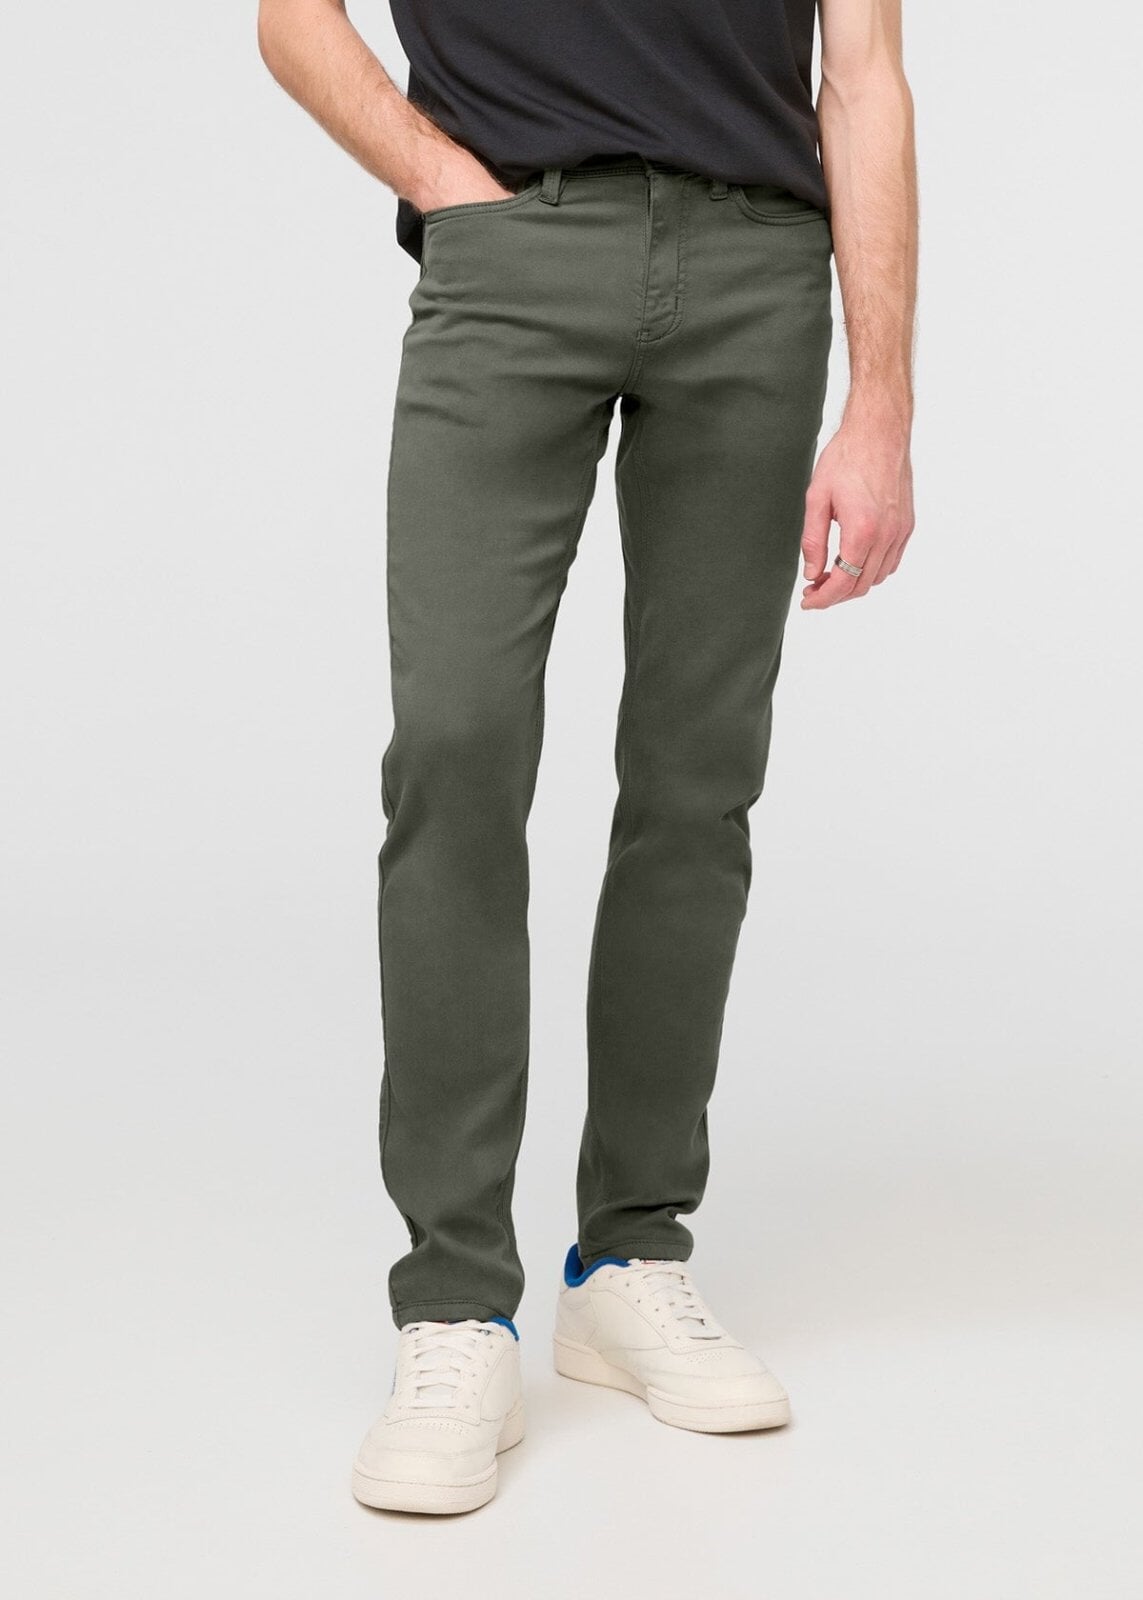 Men's Grey-Green Slim Fit Dress Sweatpant